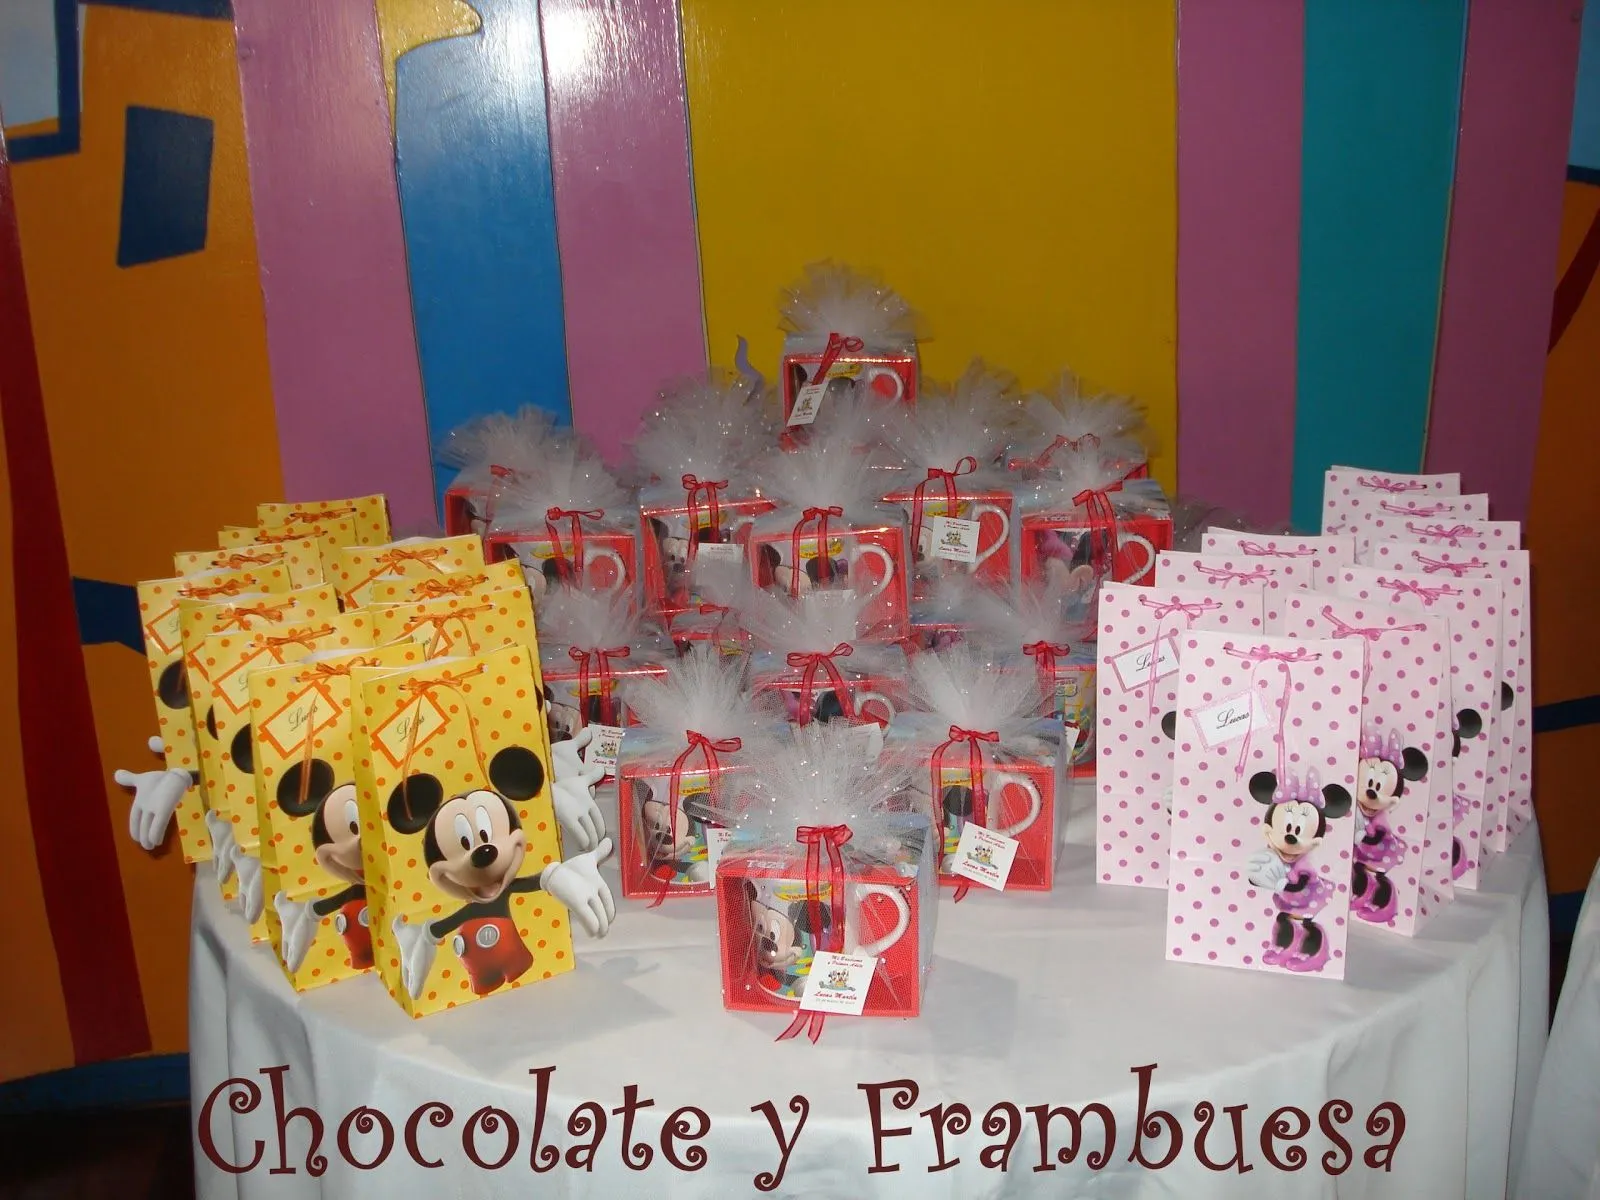 Chocolate y Frambuesa: MESA DE GOLOSINAS DE MICKEY